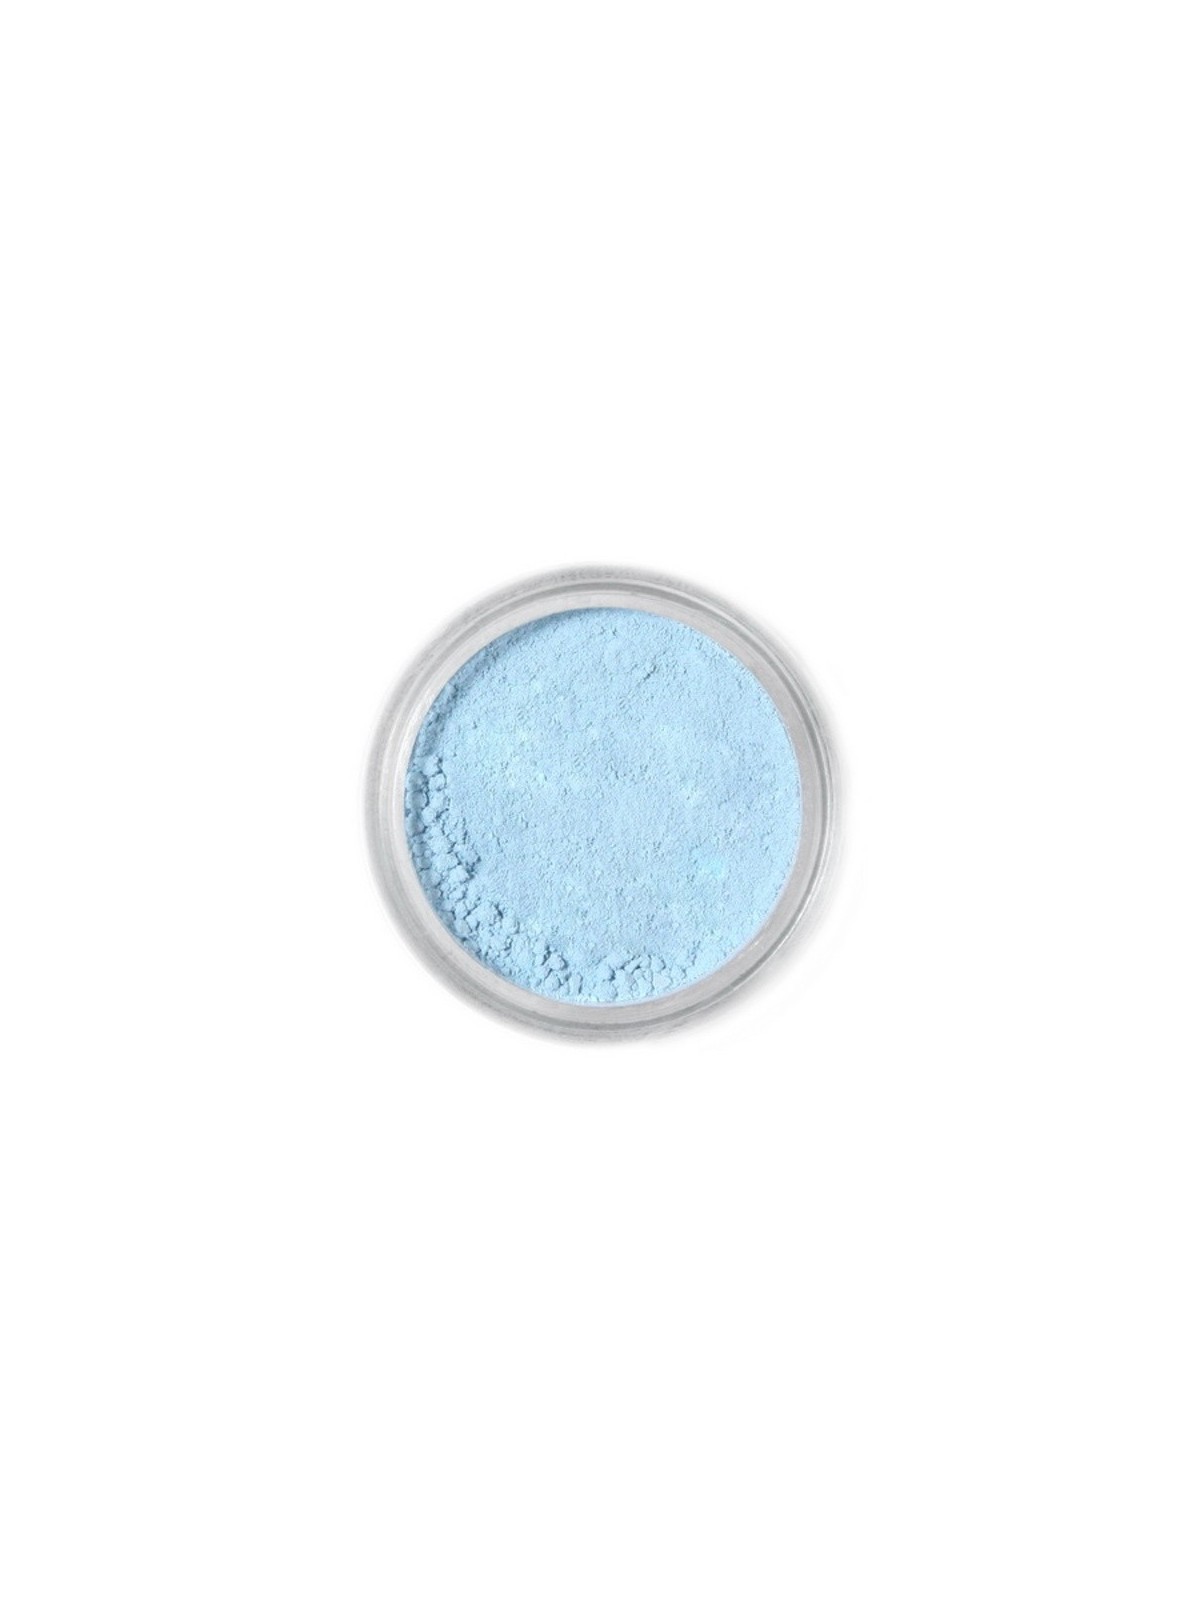 Essbaren Puderfarbe Fractal - Sky Blue, Égszínkék (4 g)